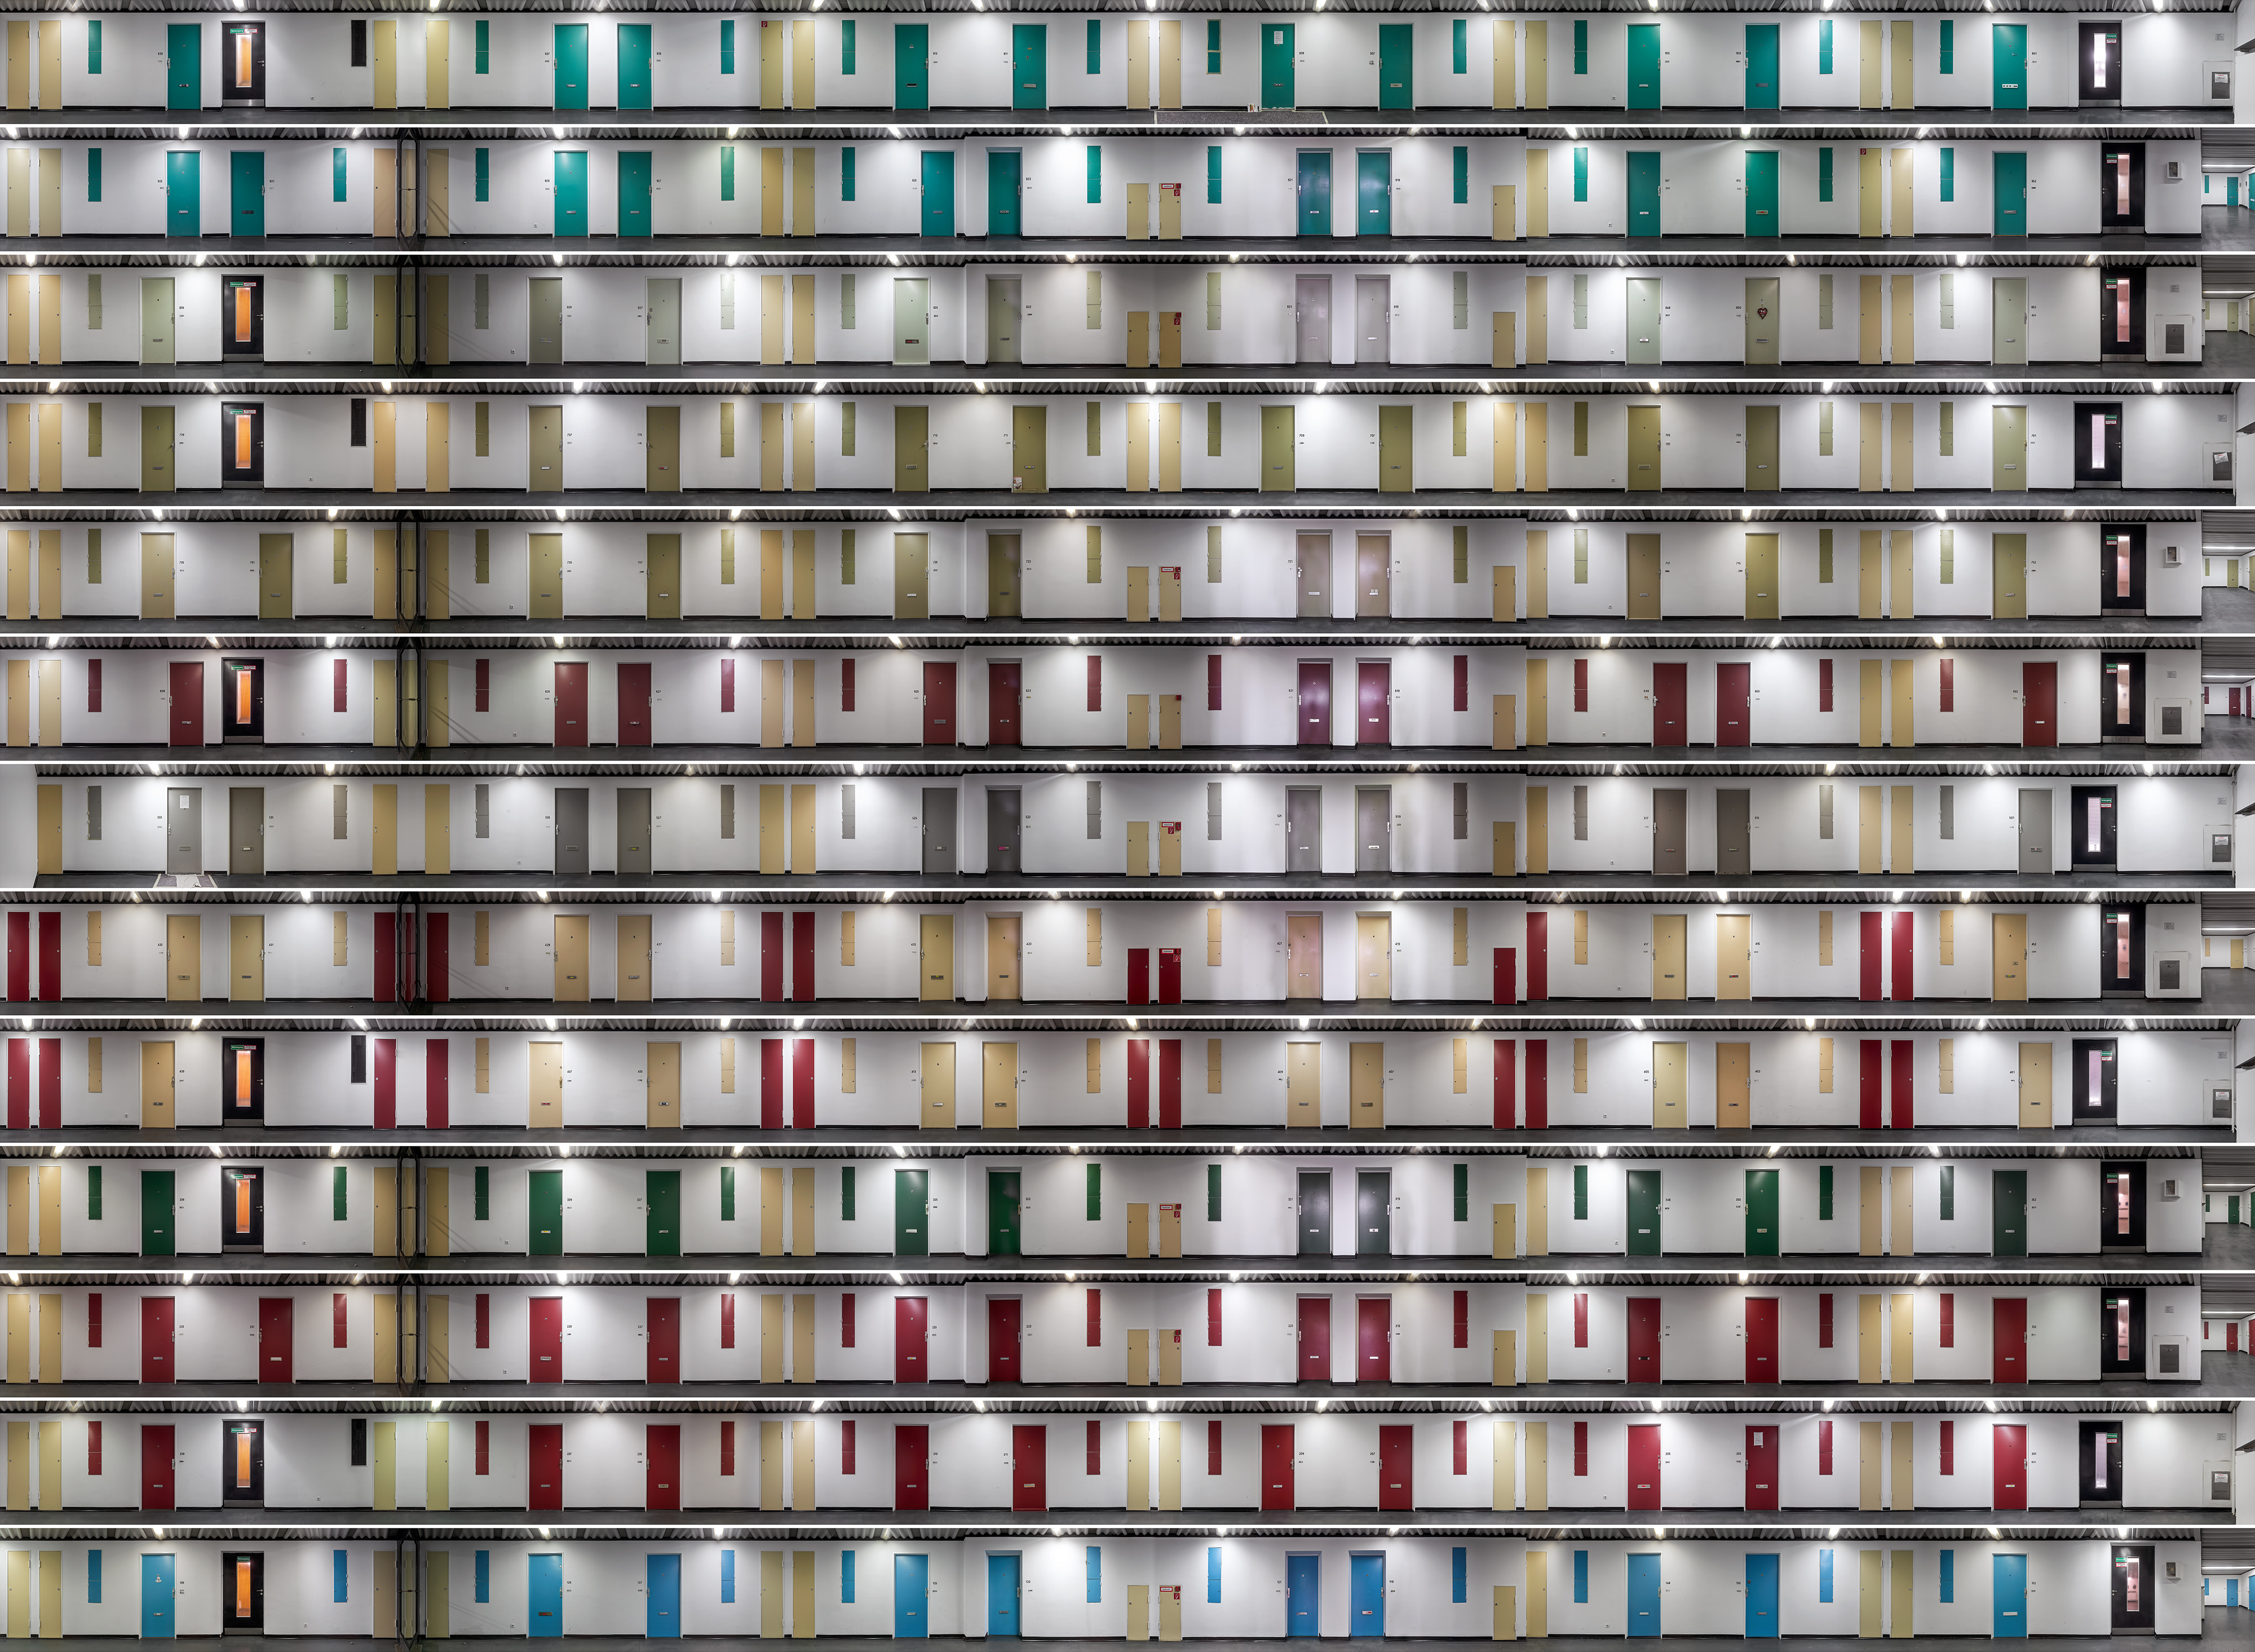 komposition mit zehn farben #2, 2014,160 x 215 cm,diptychon